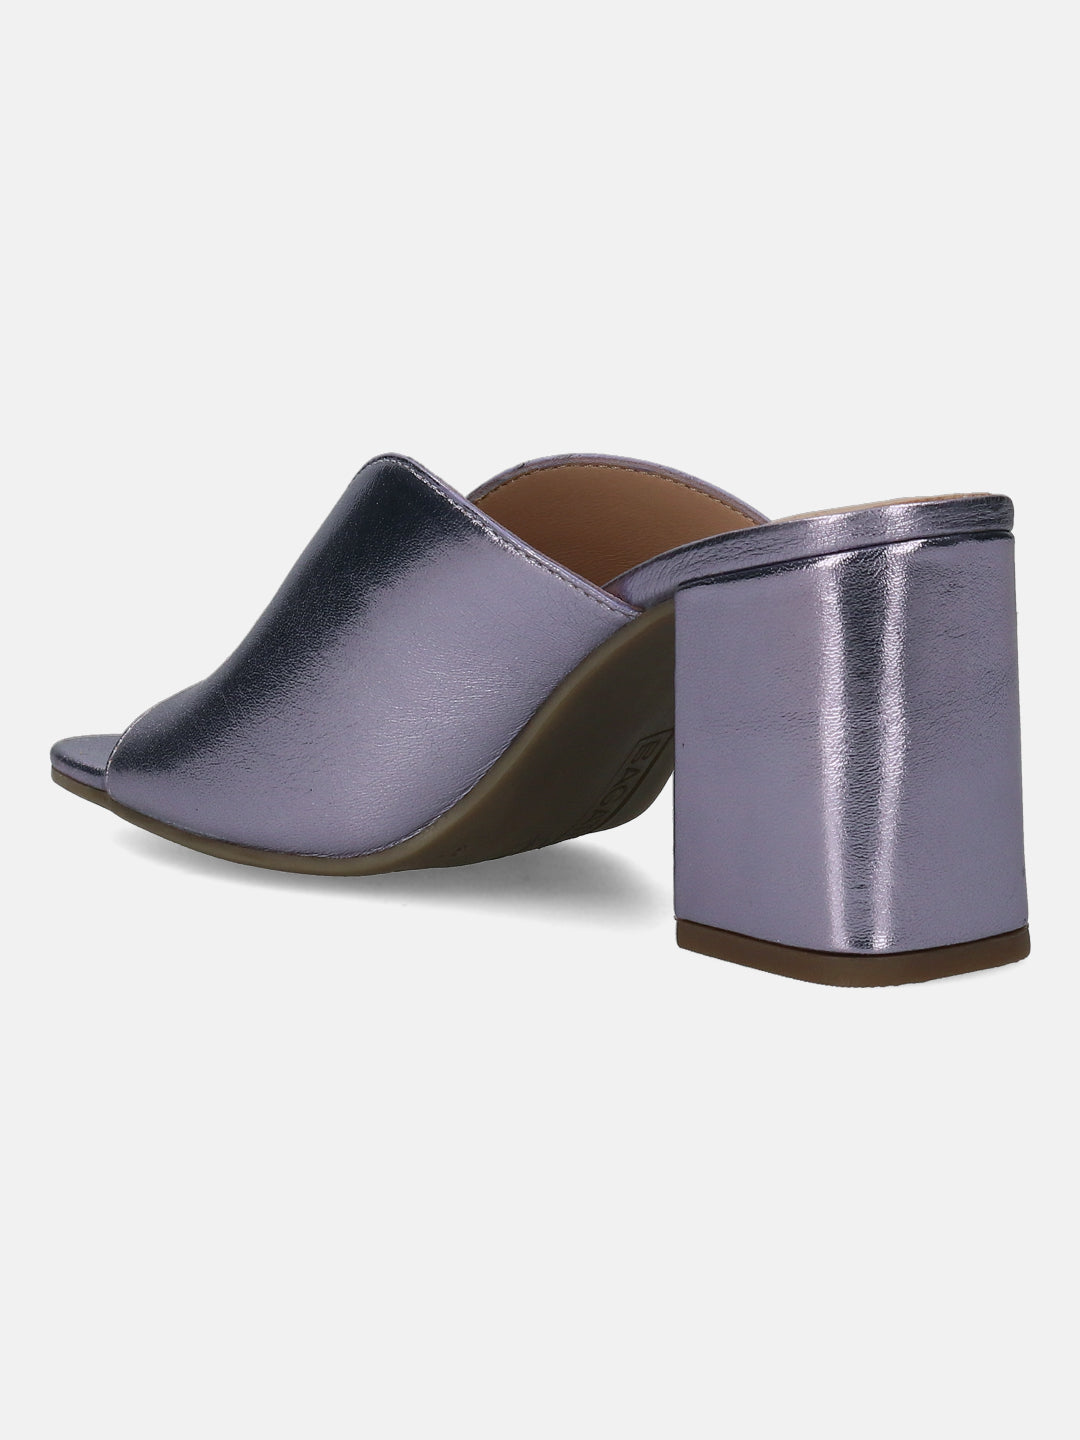 Rosella Metallics Leather Heels